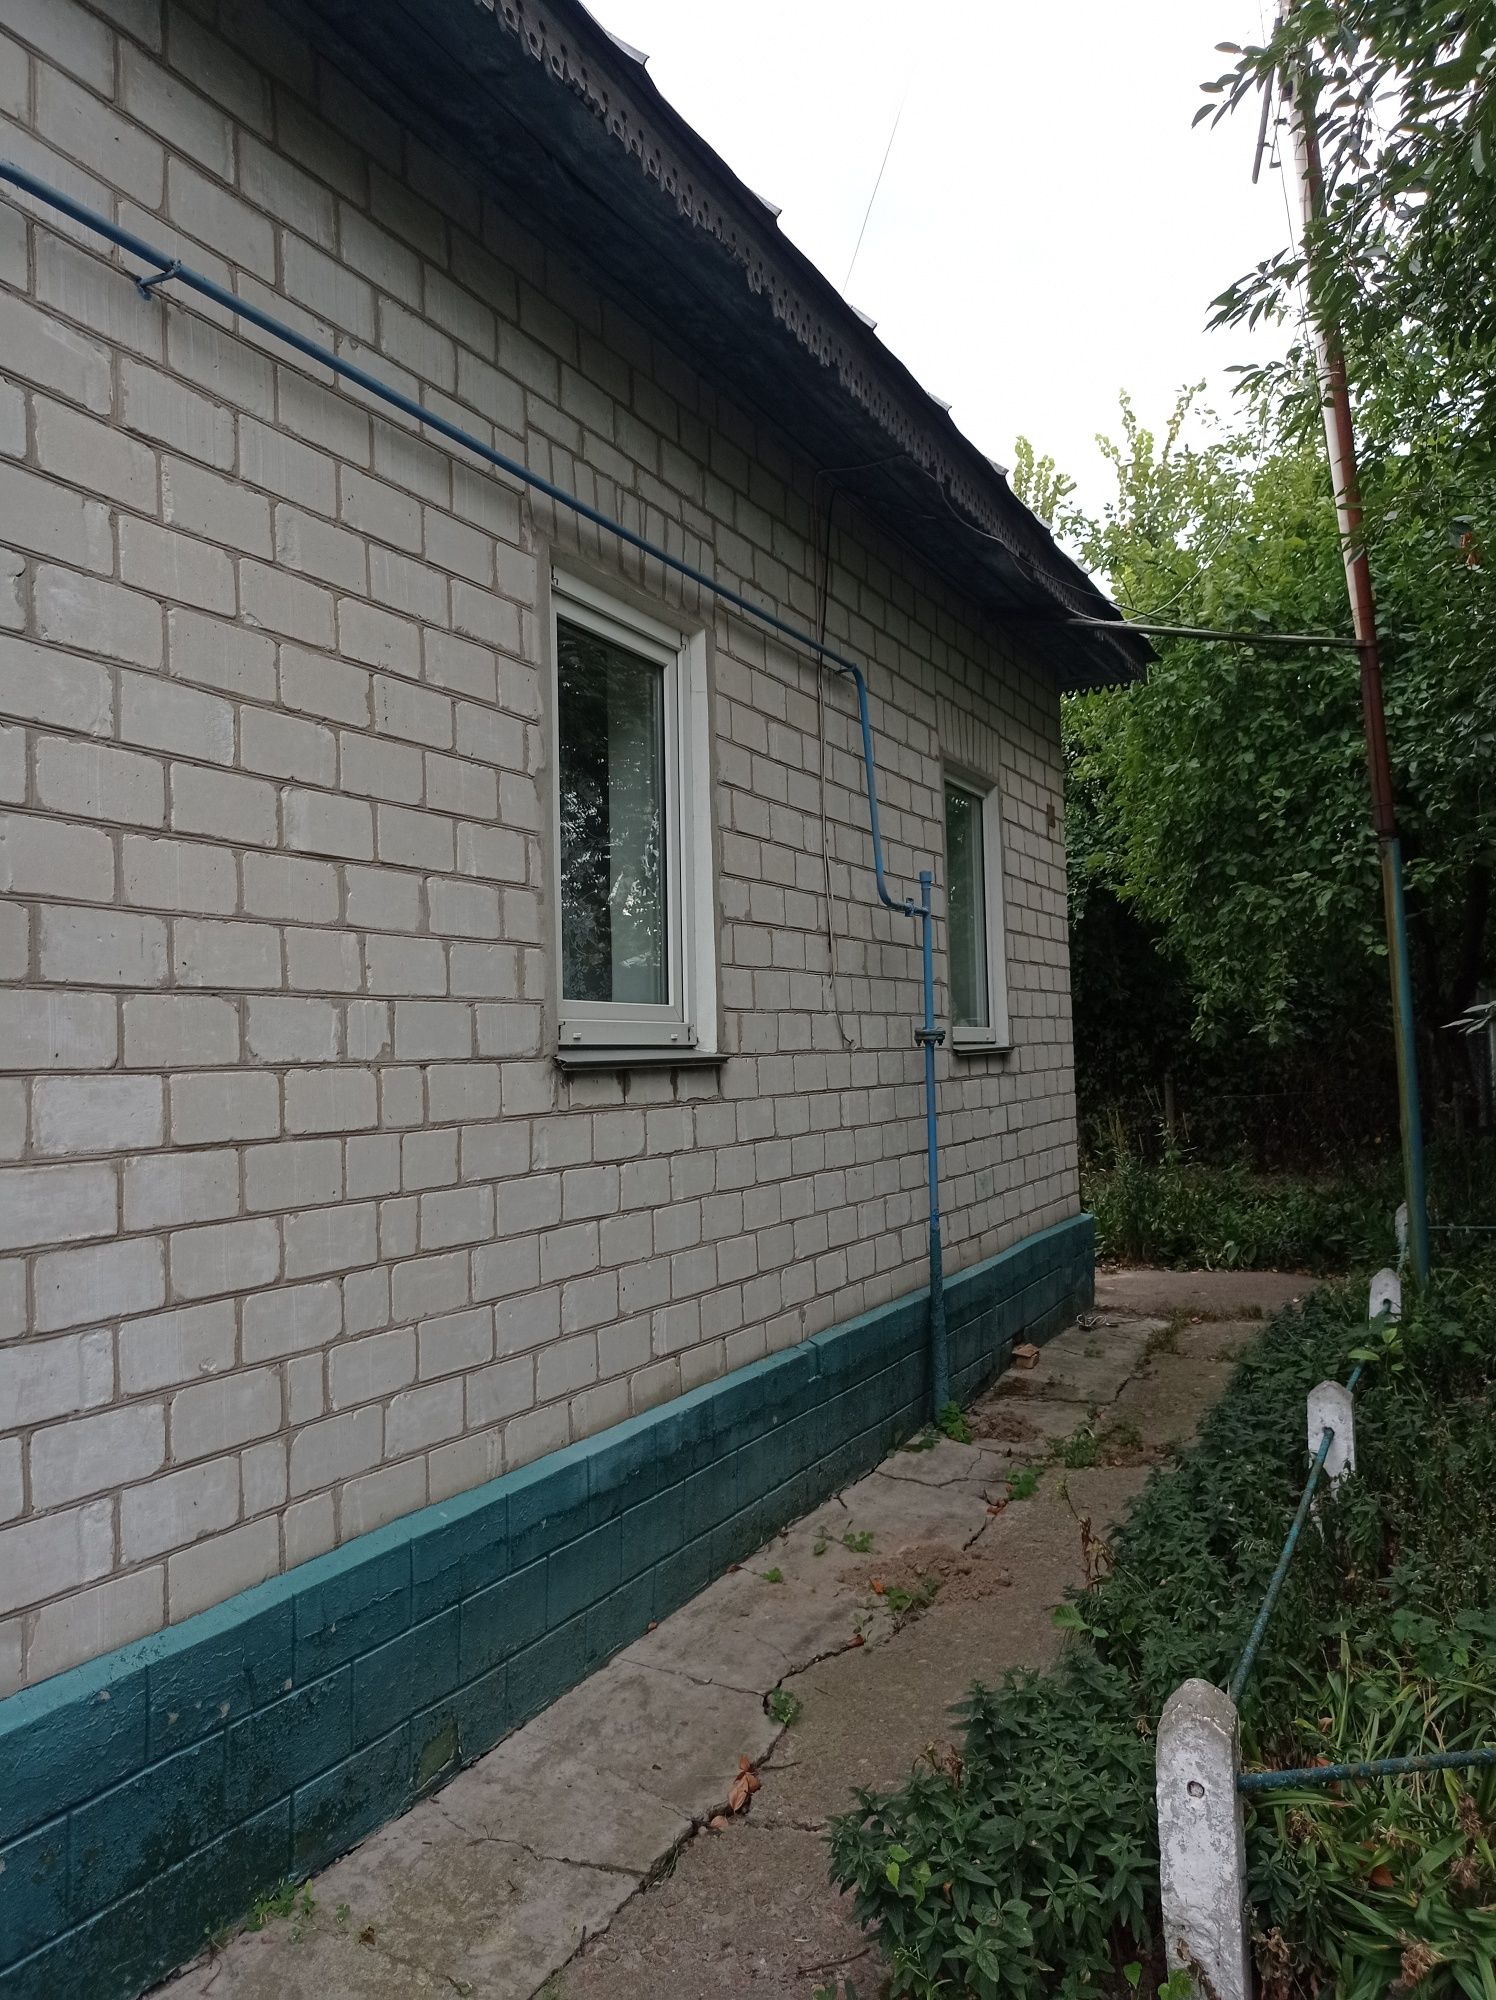 Кирпичный дом в 100км от КИЕВА.  Трасса Чернигов -Киев. Село Прогрес.